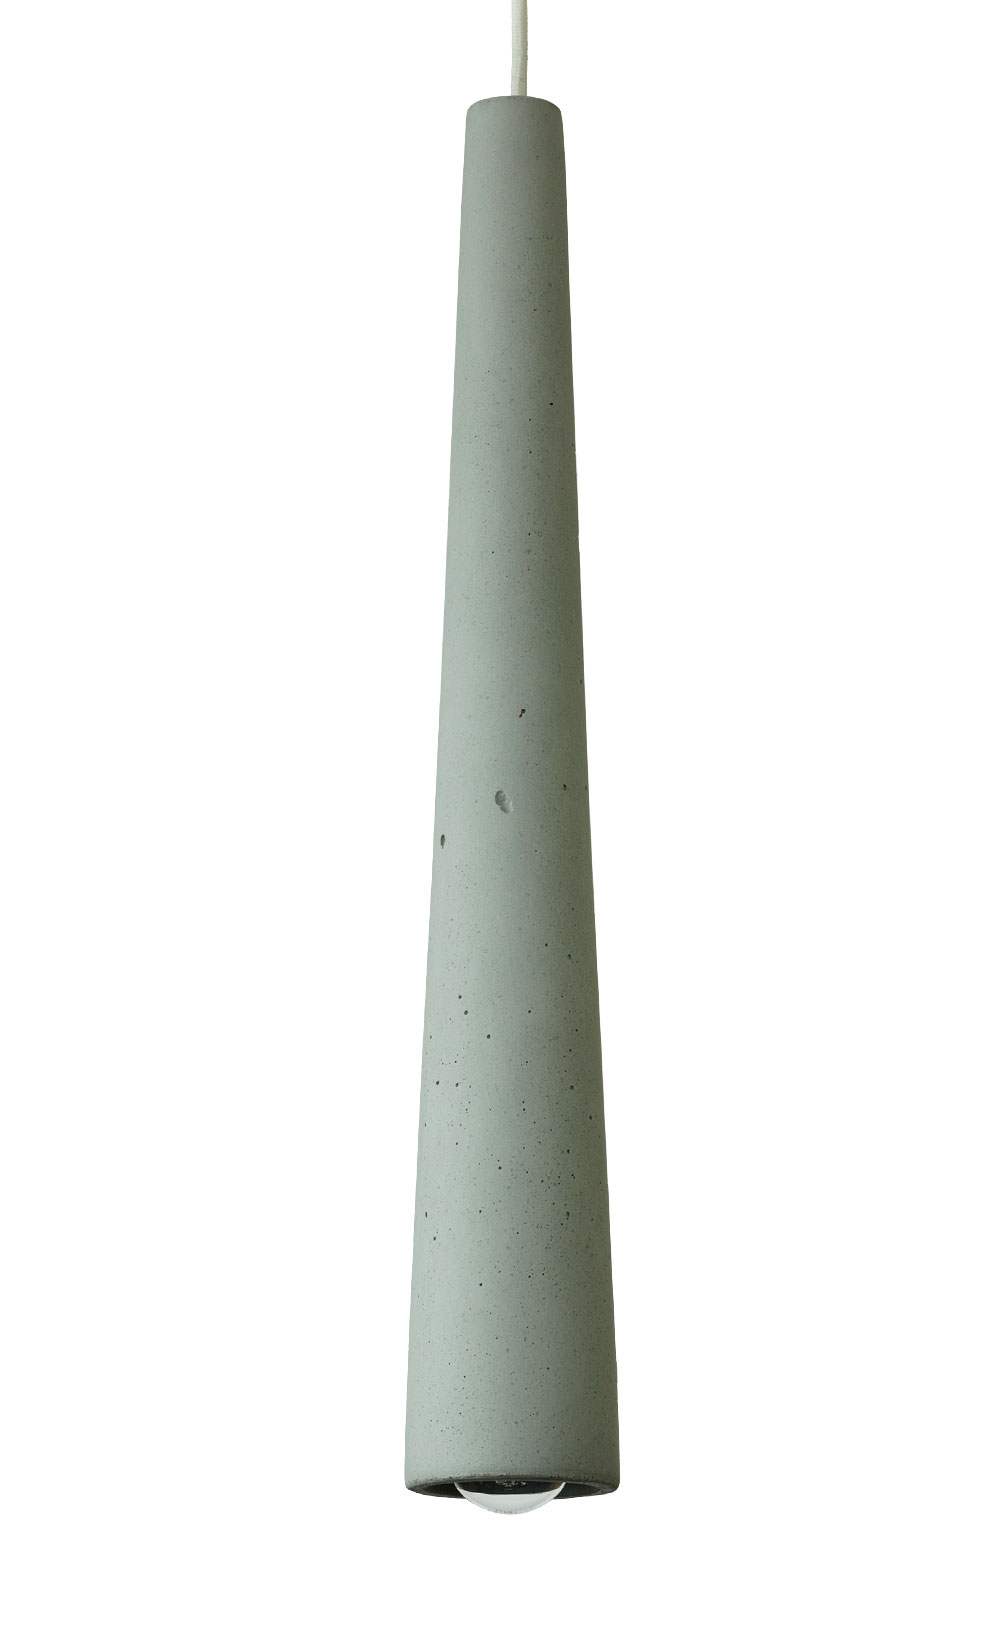 Schmale, lange Beton-Pendelleuchten (60 cm): Die knapp 60 cm lange Beton-Pendelleuchte in der Betonfarbe „mittelgrau“